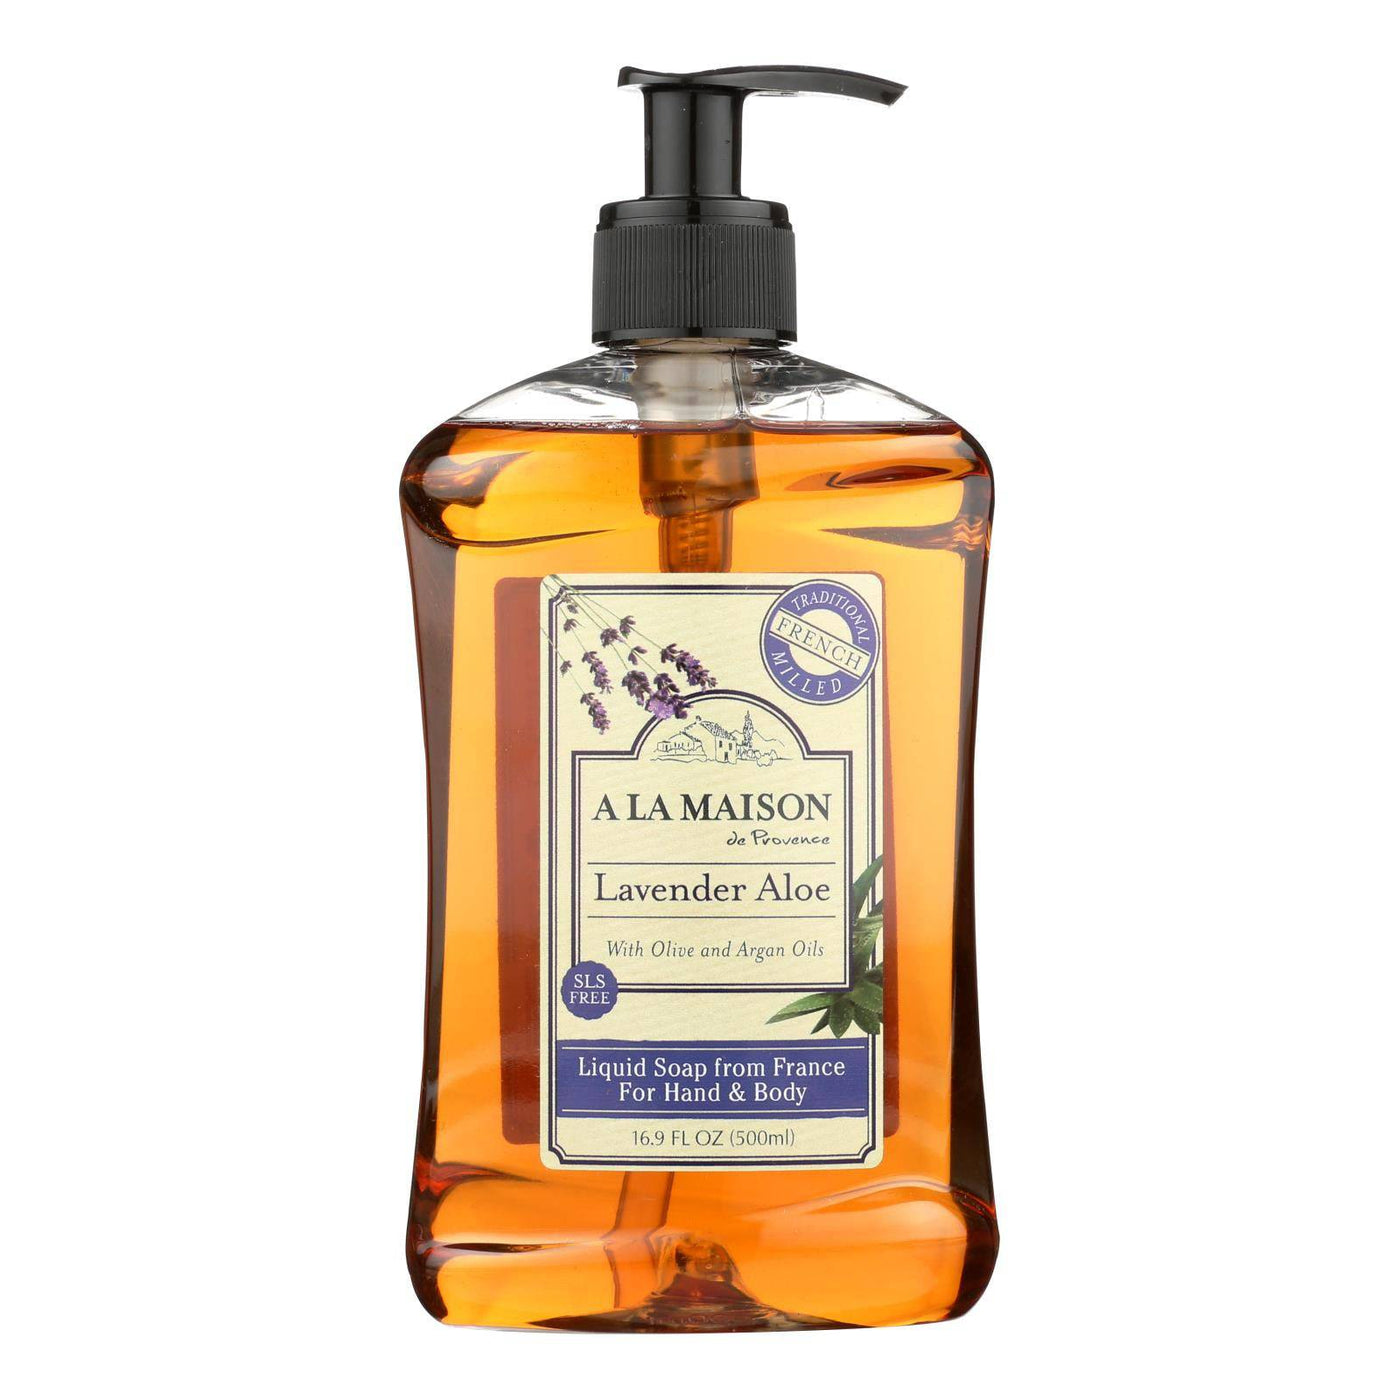 A La Maison - French Liquid Soap - Lavender Aloe - 16.9 Fl Oz | OnlyNaturals.us